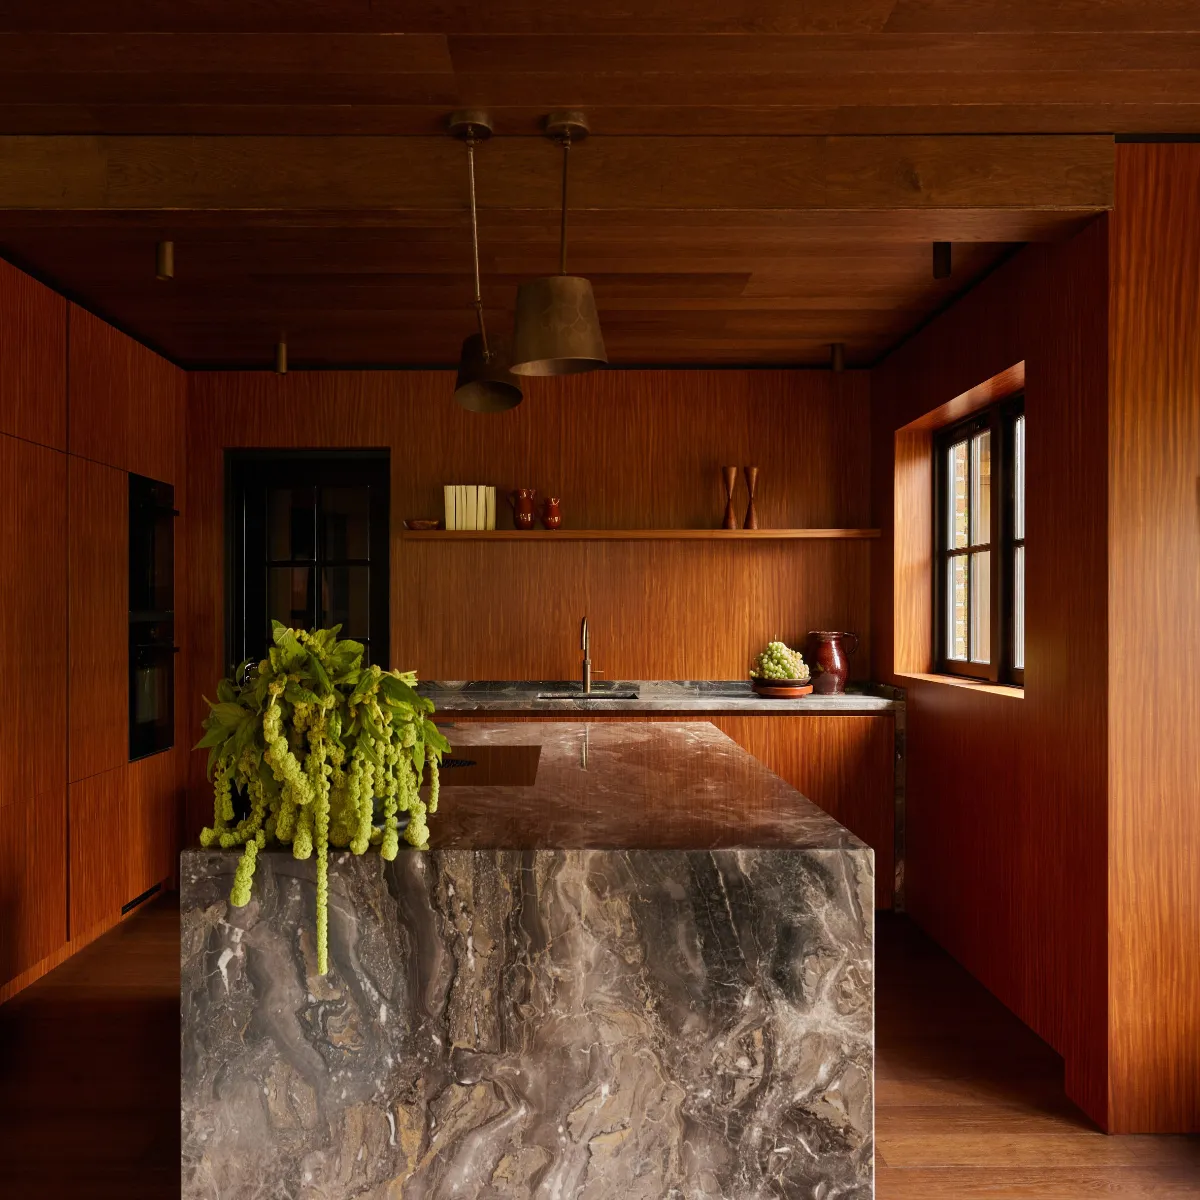 آشپزخانه مدرن الهام گرفته از طبیعت با دیوارهای چوبی و جزیره سنگی